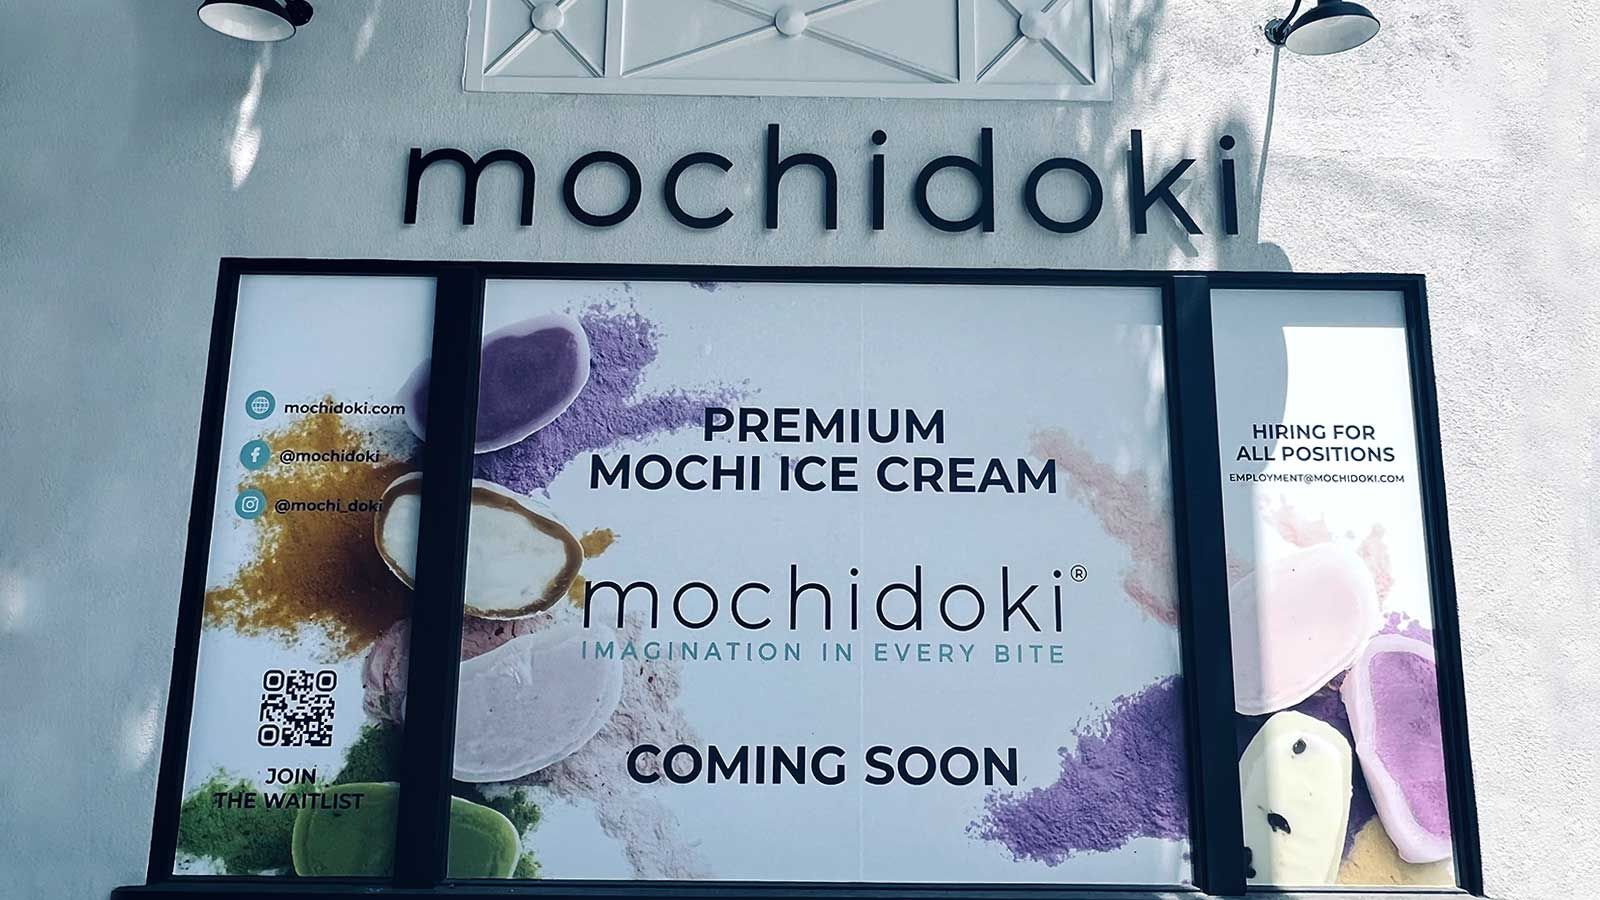 mochidoki storefront signage